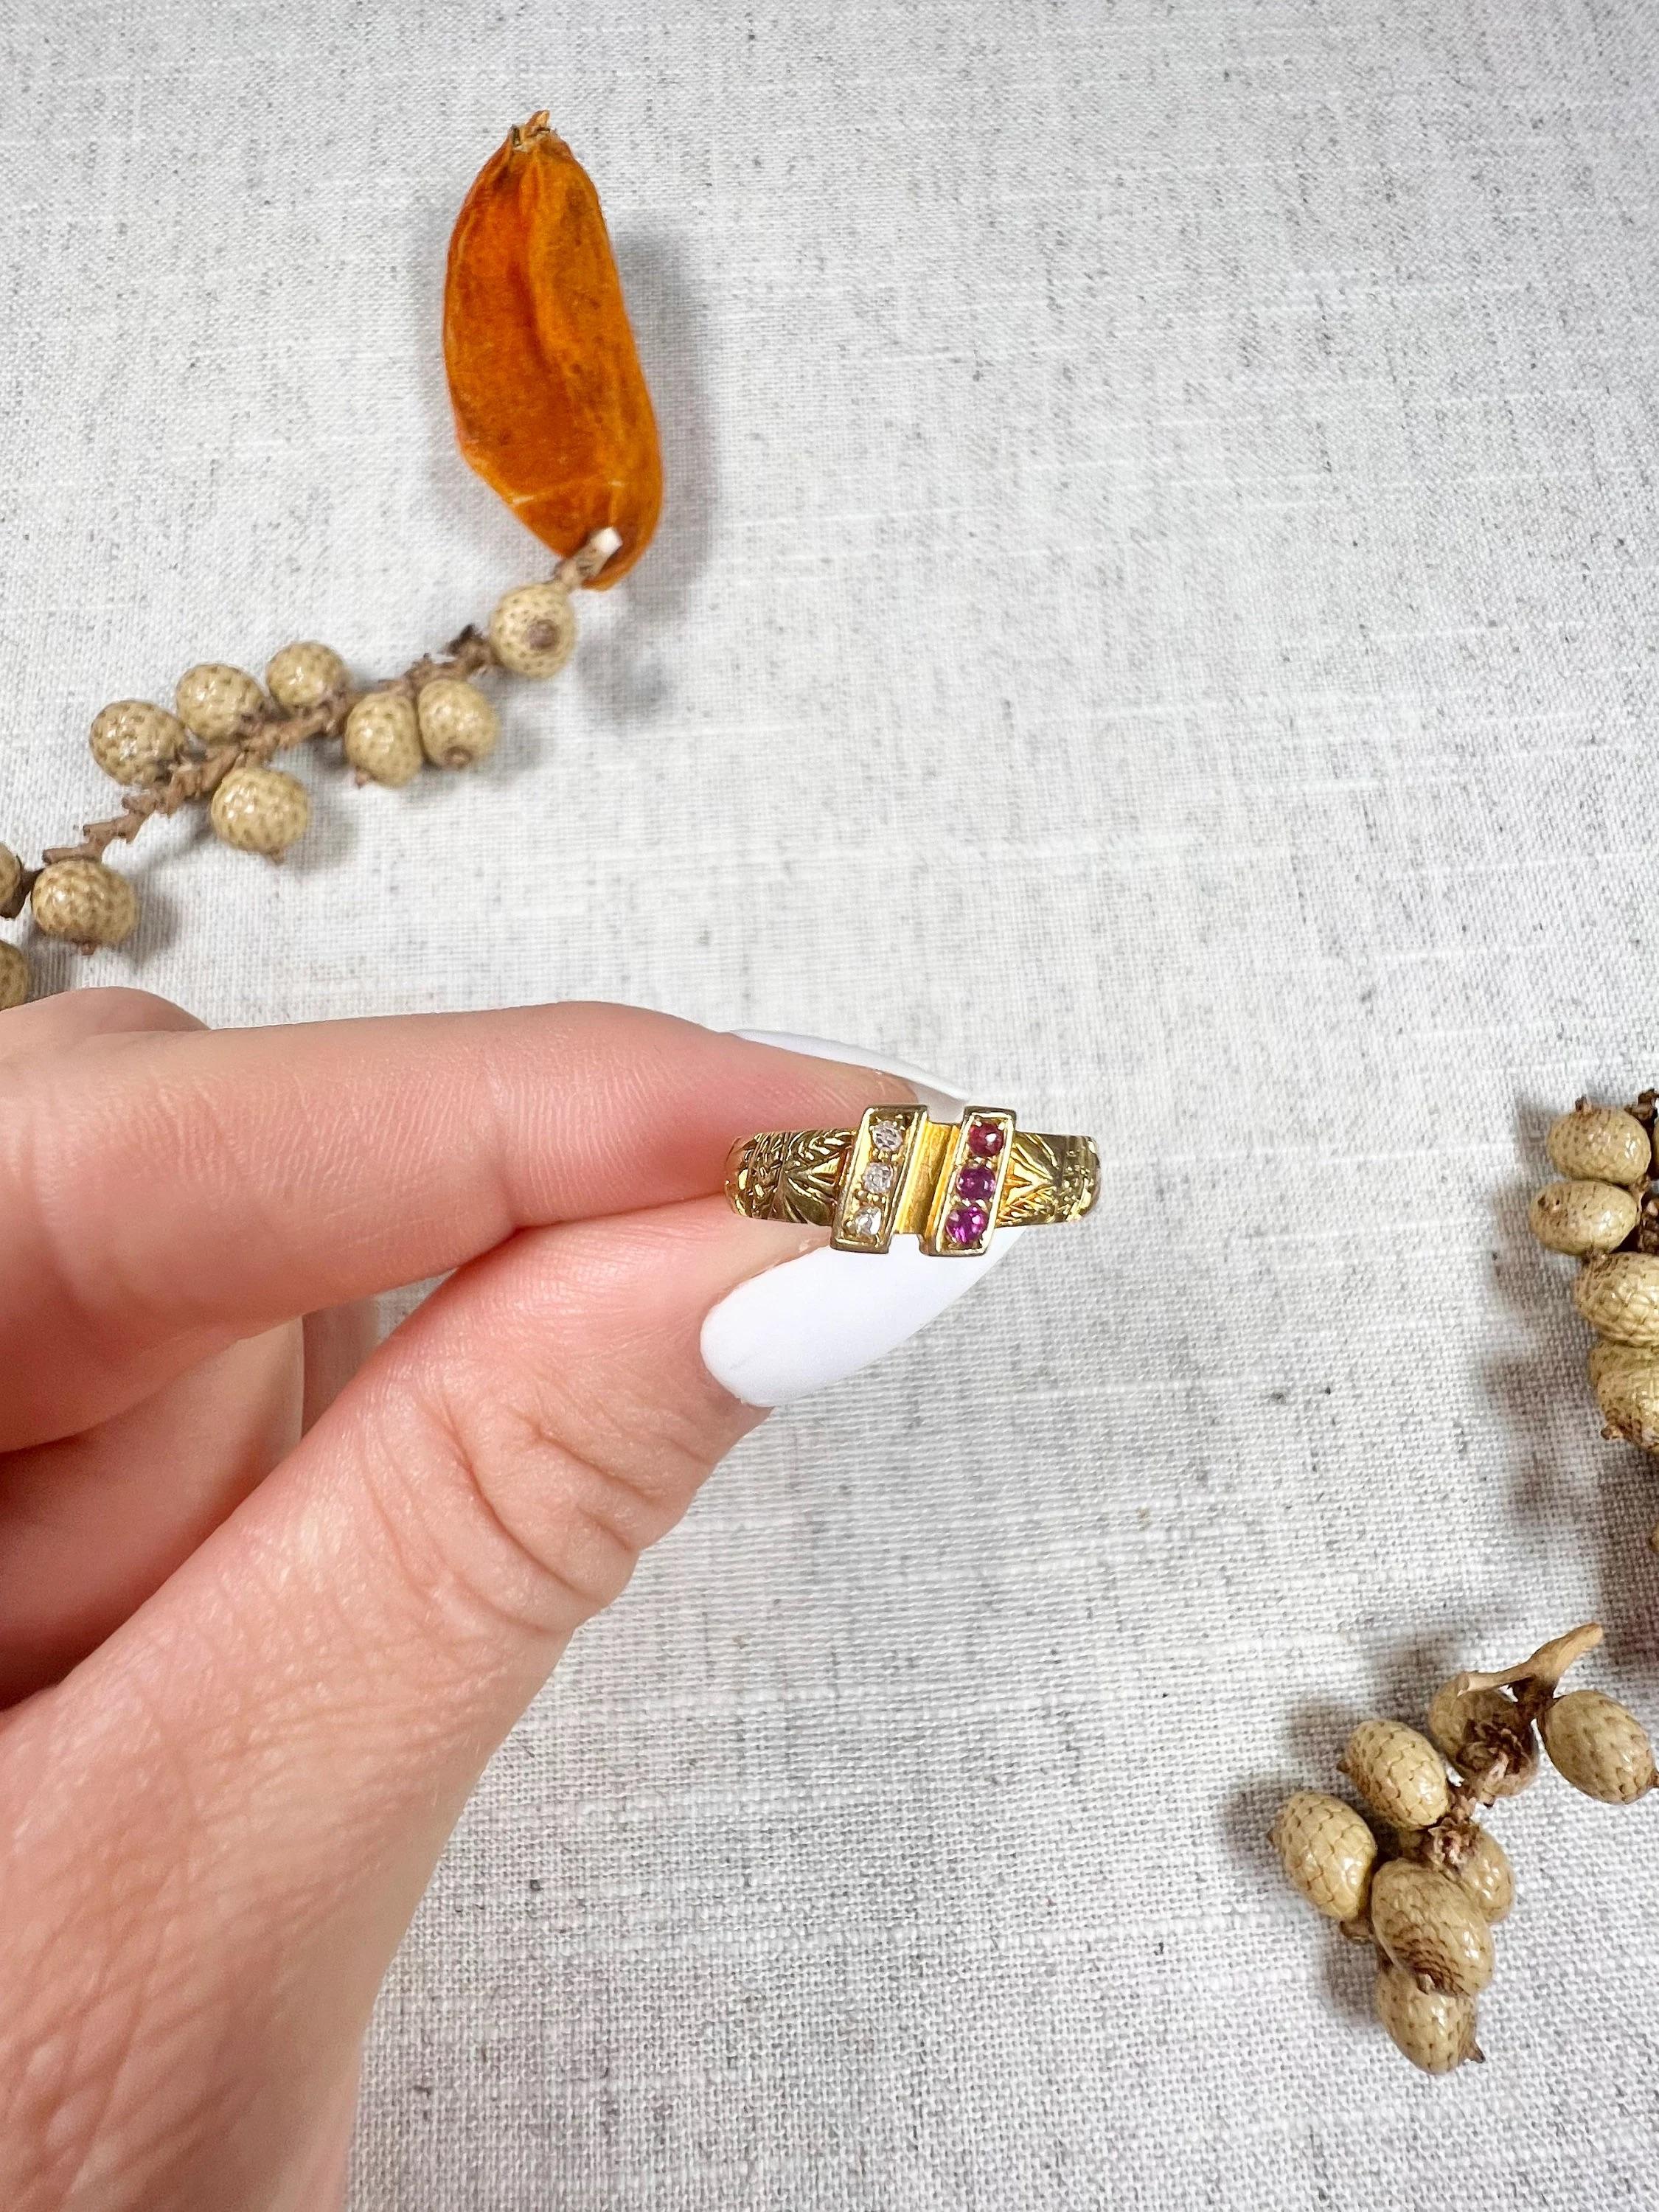 Antiker Ring

18ct Gold gestempelt

Gepunzt Chester 1901

Herstellerzeichen T & S

Dieser atemberaubende edwardianische Ring ist aus 18-karätigem Gold gefertigt und besticht durch eine schöne Kombination aus Rubinen und Diamanten. Das Band des Rings